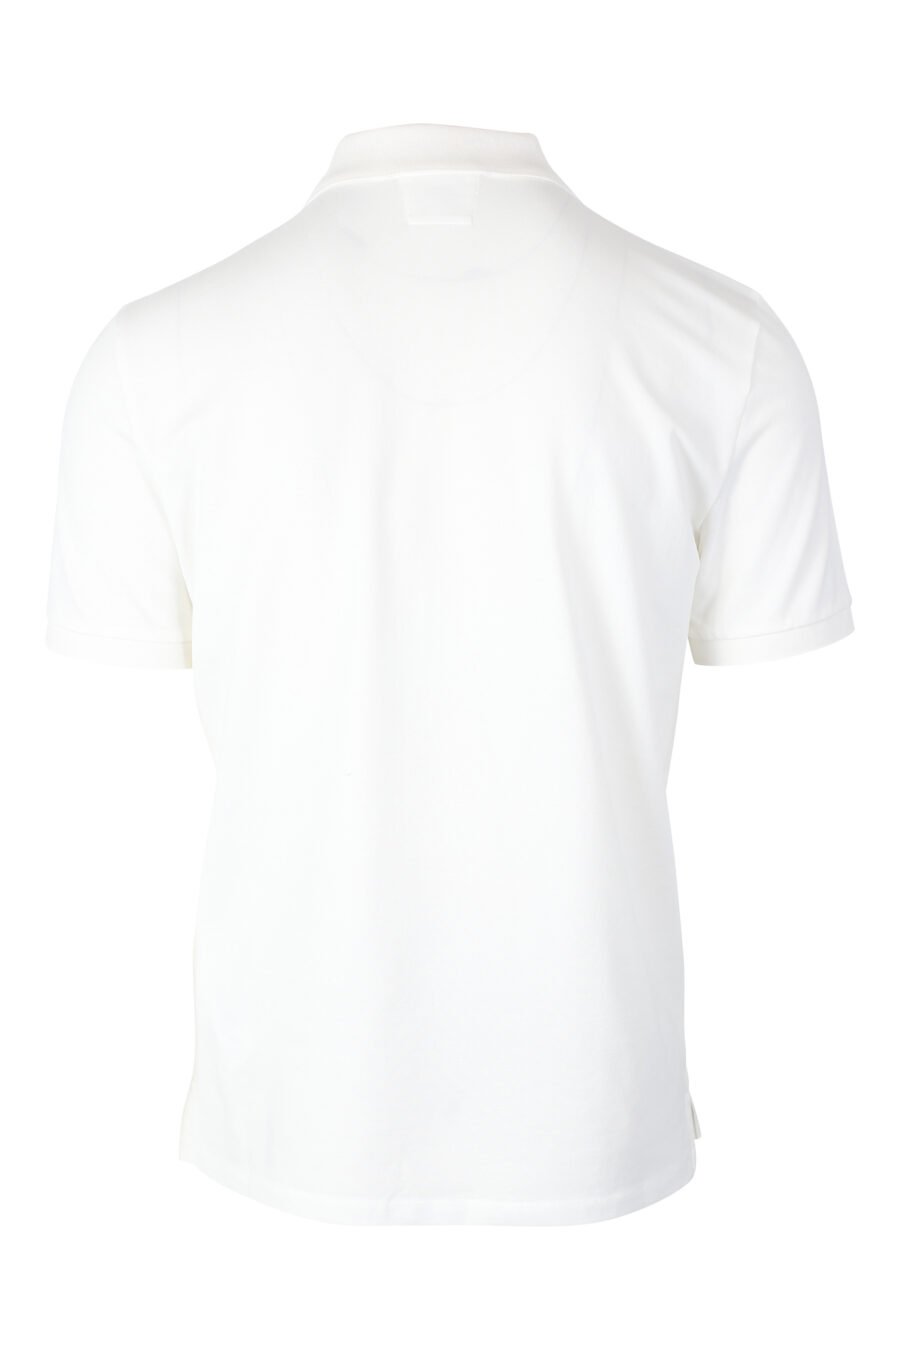 Weißes Poloshirt mit kreisförmigem Mini-Logo - IMG 2382 1